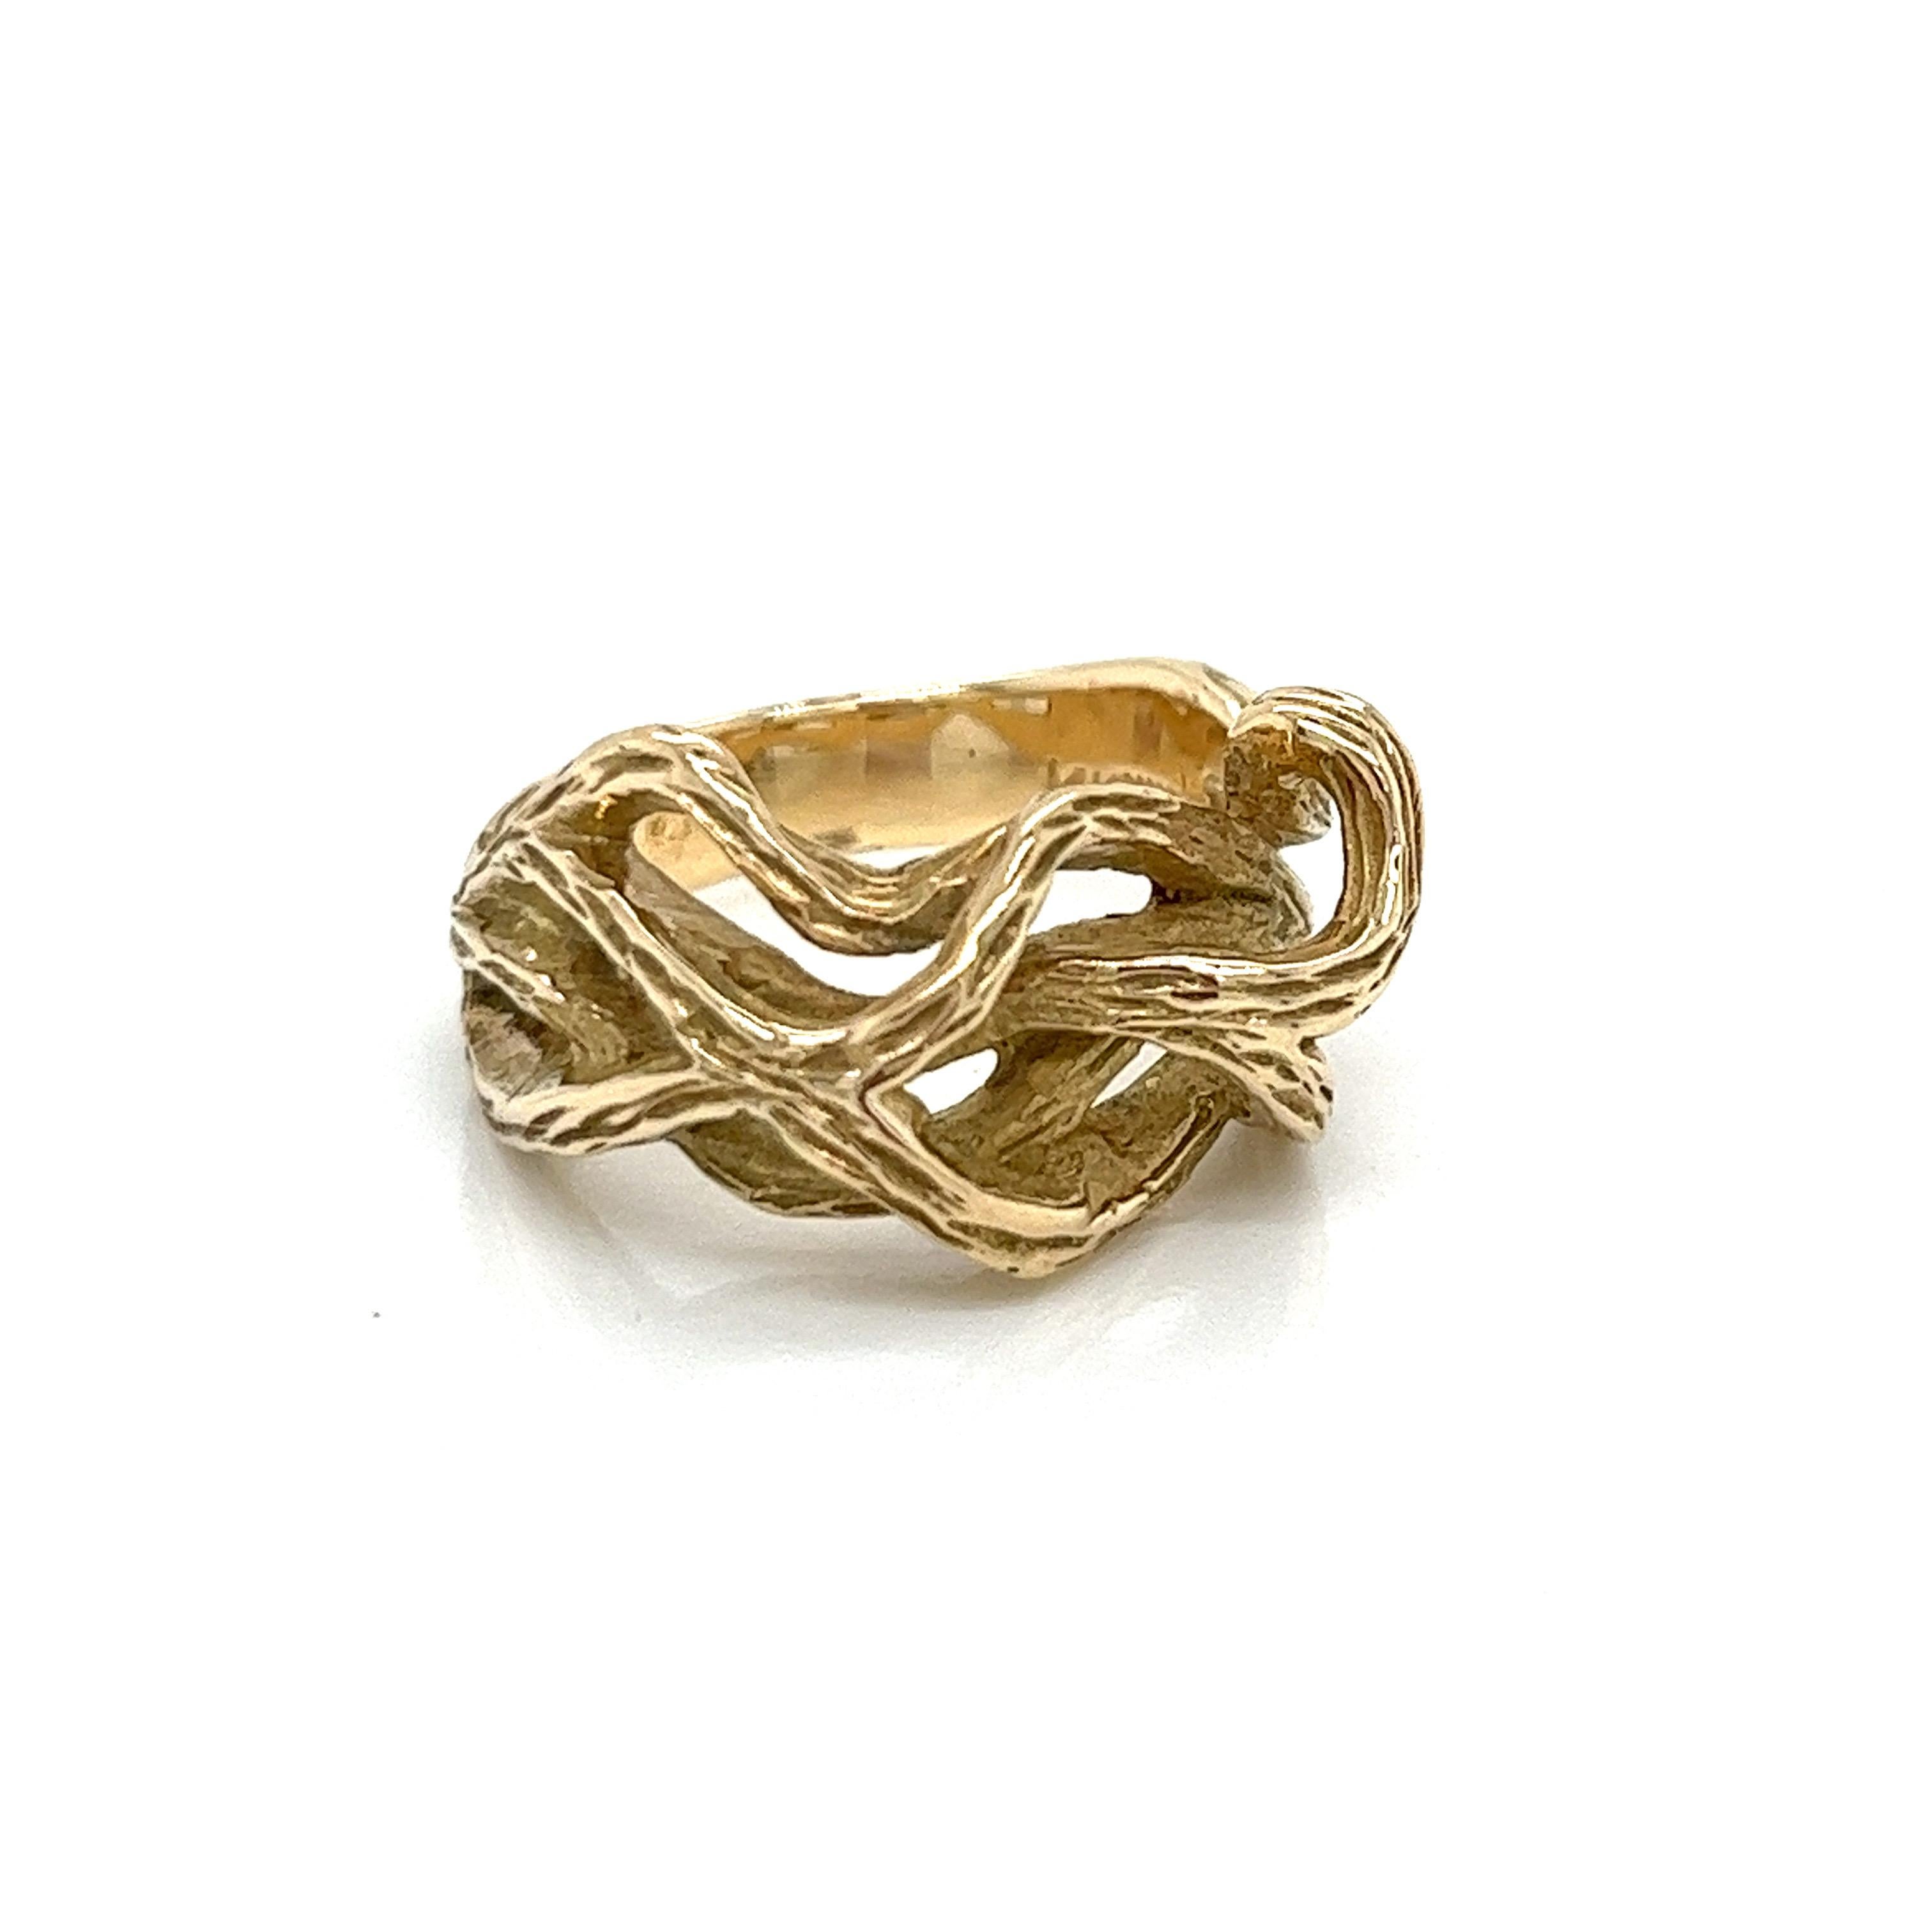 Vintage 1980's 14k Yellow Gold Twisted Gold Statement Ring. La largeur de l'anneau sur le dessus est de 10,3 mm et se réduit à 4,8 mm sur le dessous. La taille de la bague est de 6,5 et elle peut être dimensionnée sur demande. La bague pèse 8,16 g.